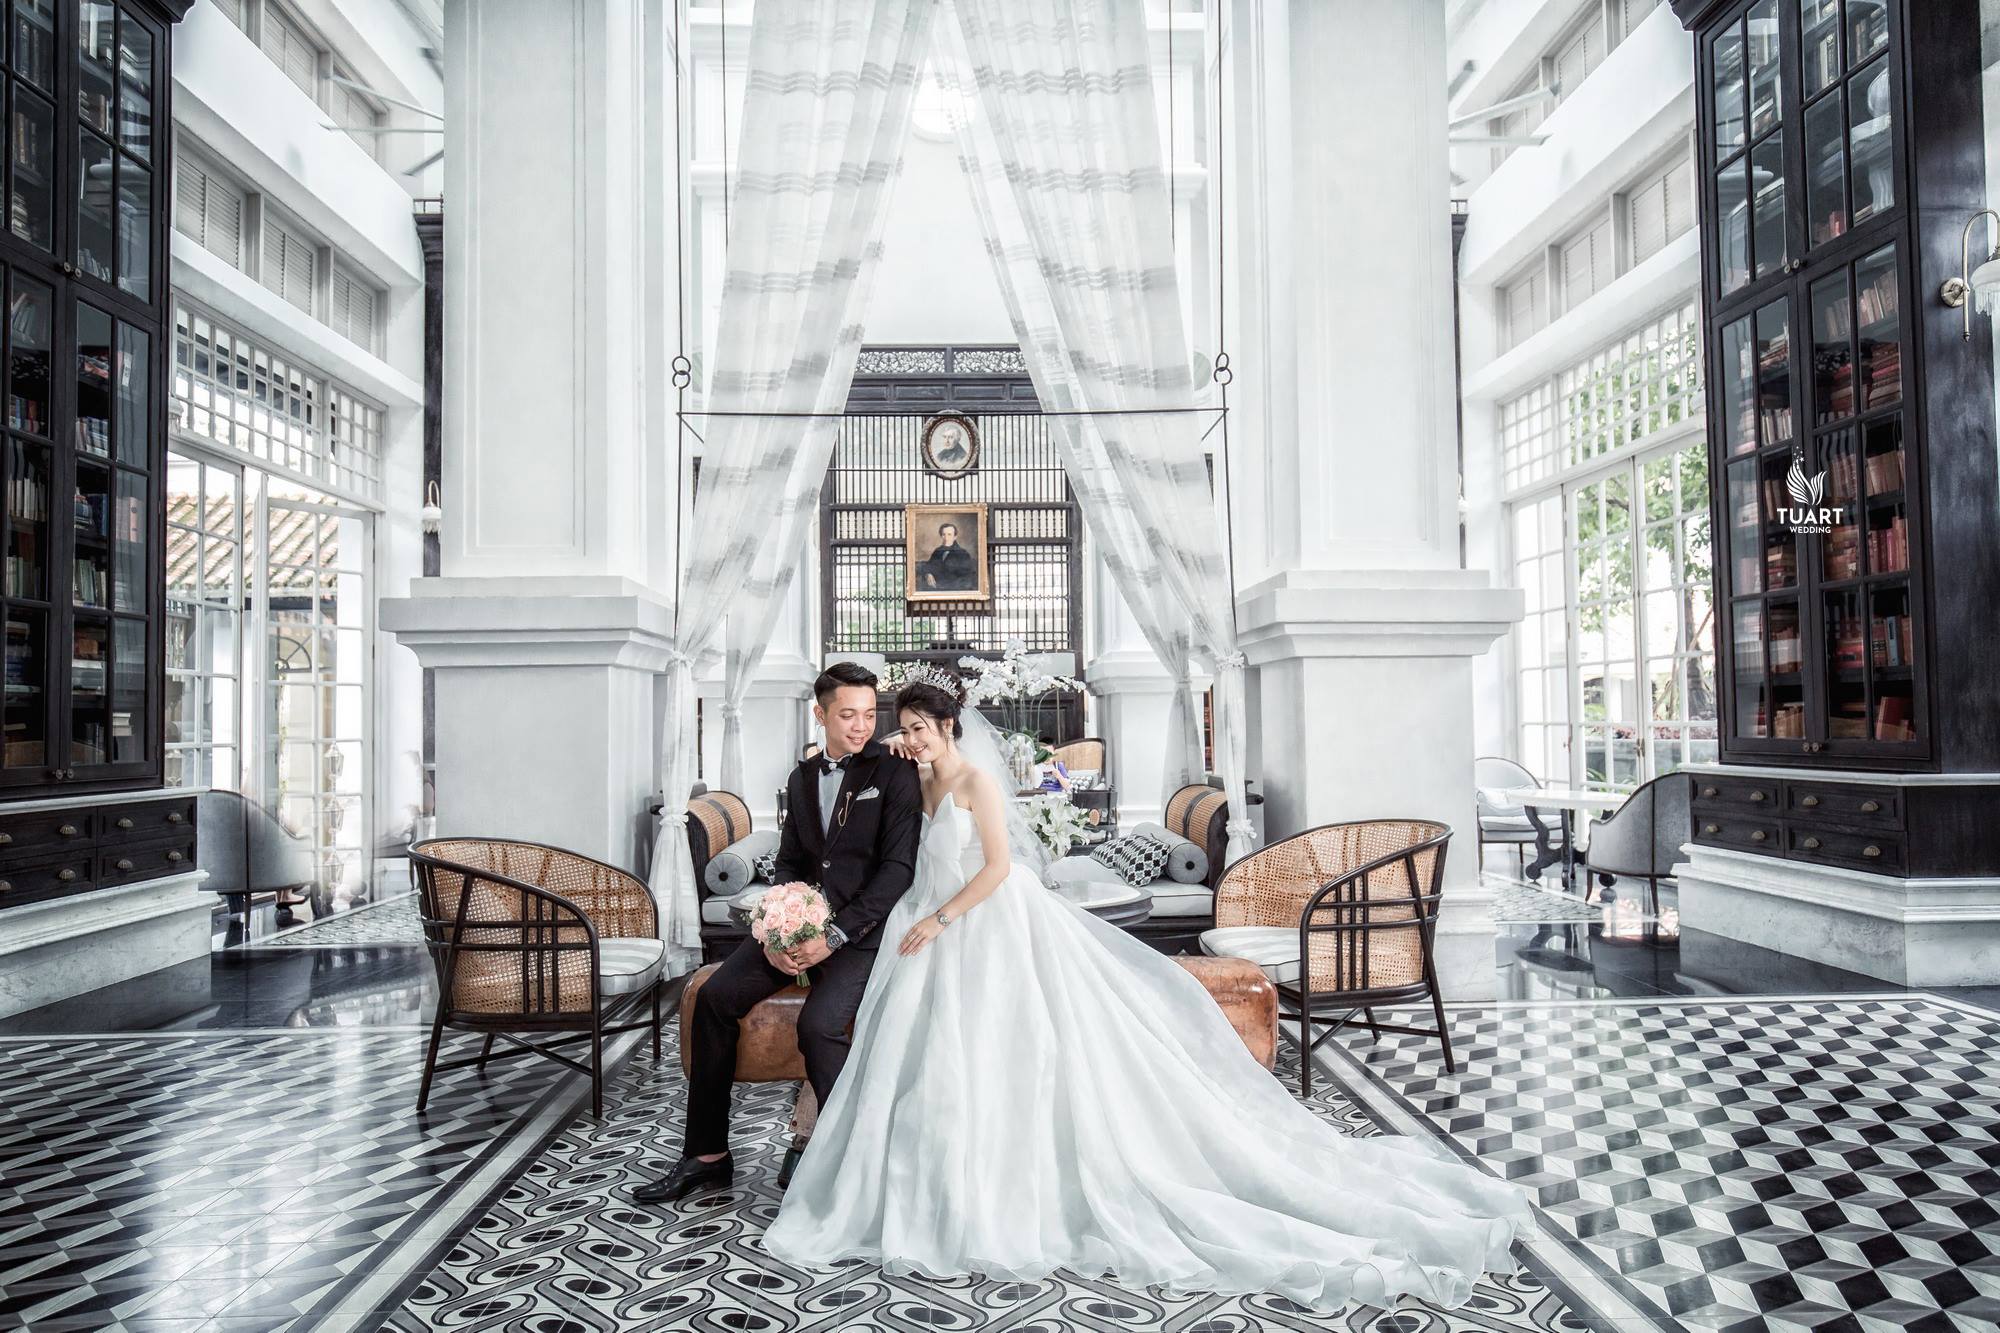 TuArt Studio là địa điểm chụp ảnh cưới đẹp Hà Nội được nhiều cặp đôi lựa chọn vì chất lượng dịch vụ và sự đẳng cấp. Với đội ngũ nhiếp ảnh viên tài năng và sáng tạo, TuArt Studio chắc chắn sẽ mang đến cho bạn những bức ảnh cưới đẹp và hoàn hảo nhất.